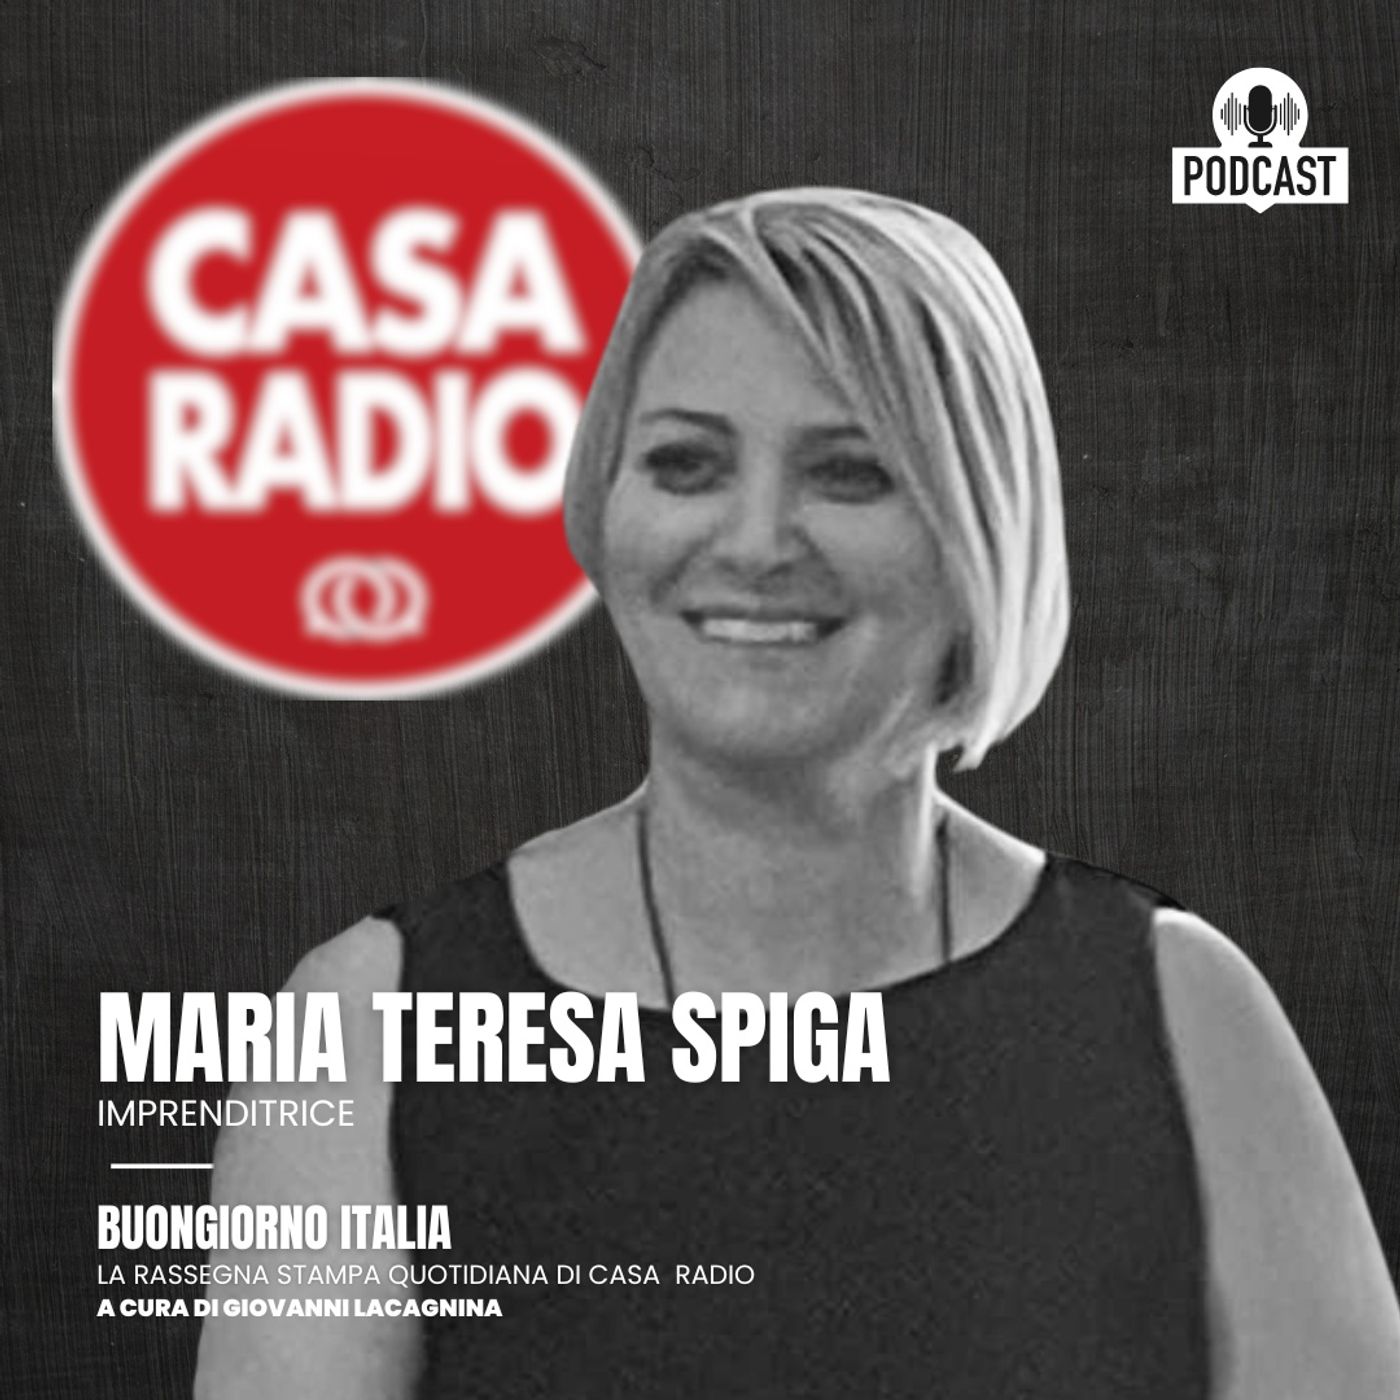 Investire a Dubai , Maria Teresa Spiga: “Vi spiego i trasferimenti a Dubai con la famiglia”.